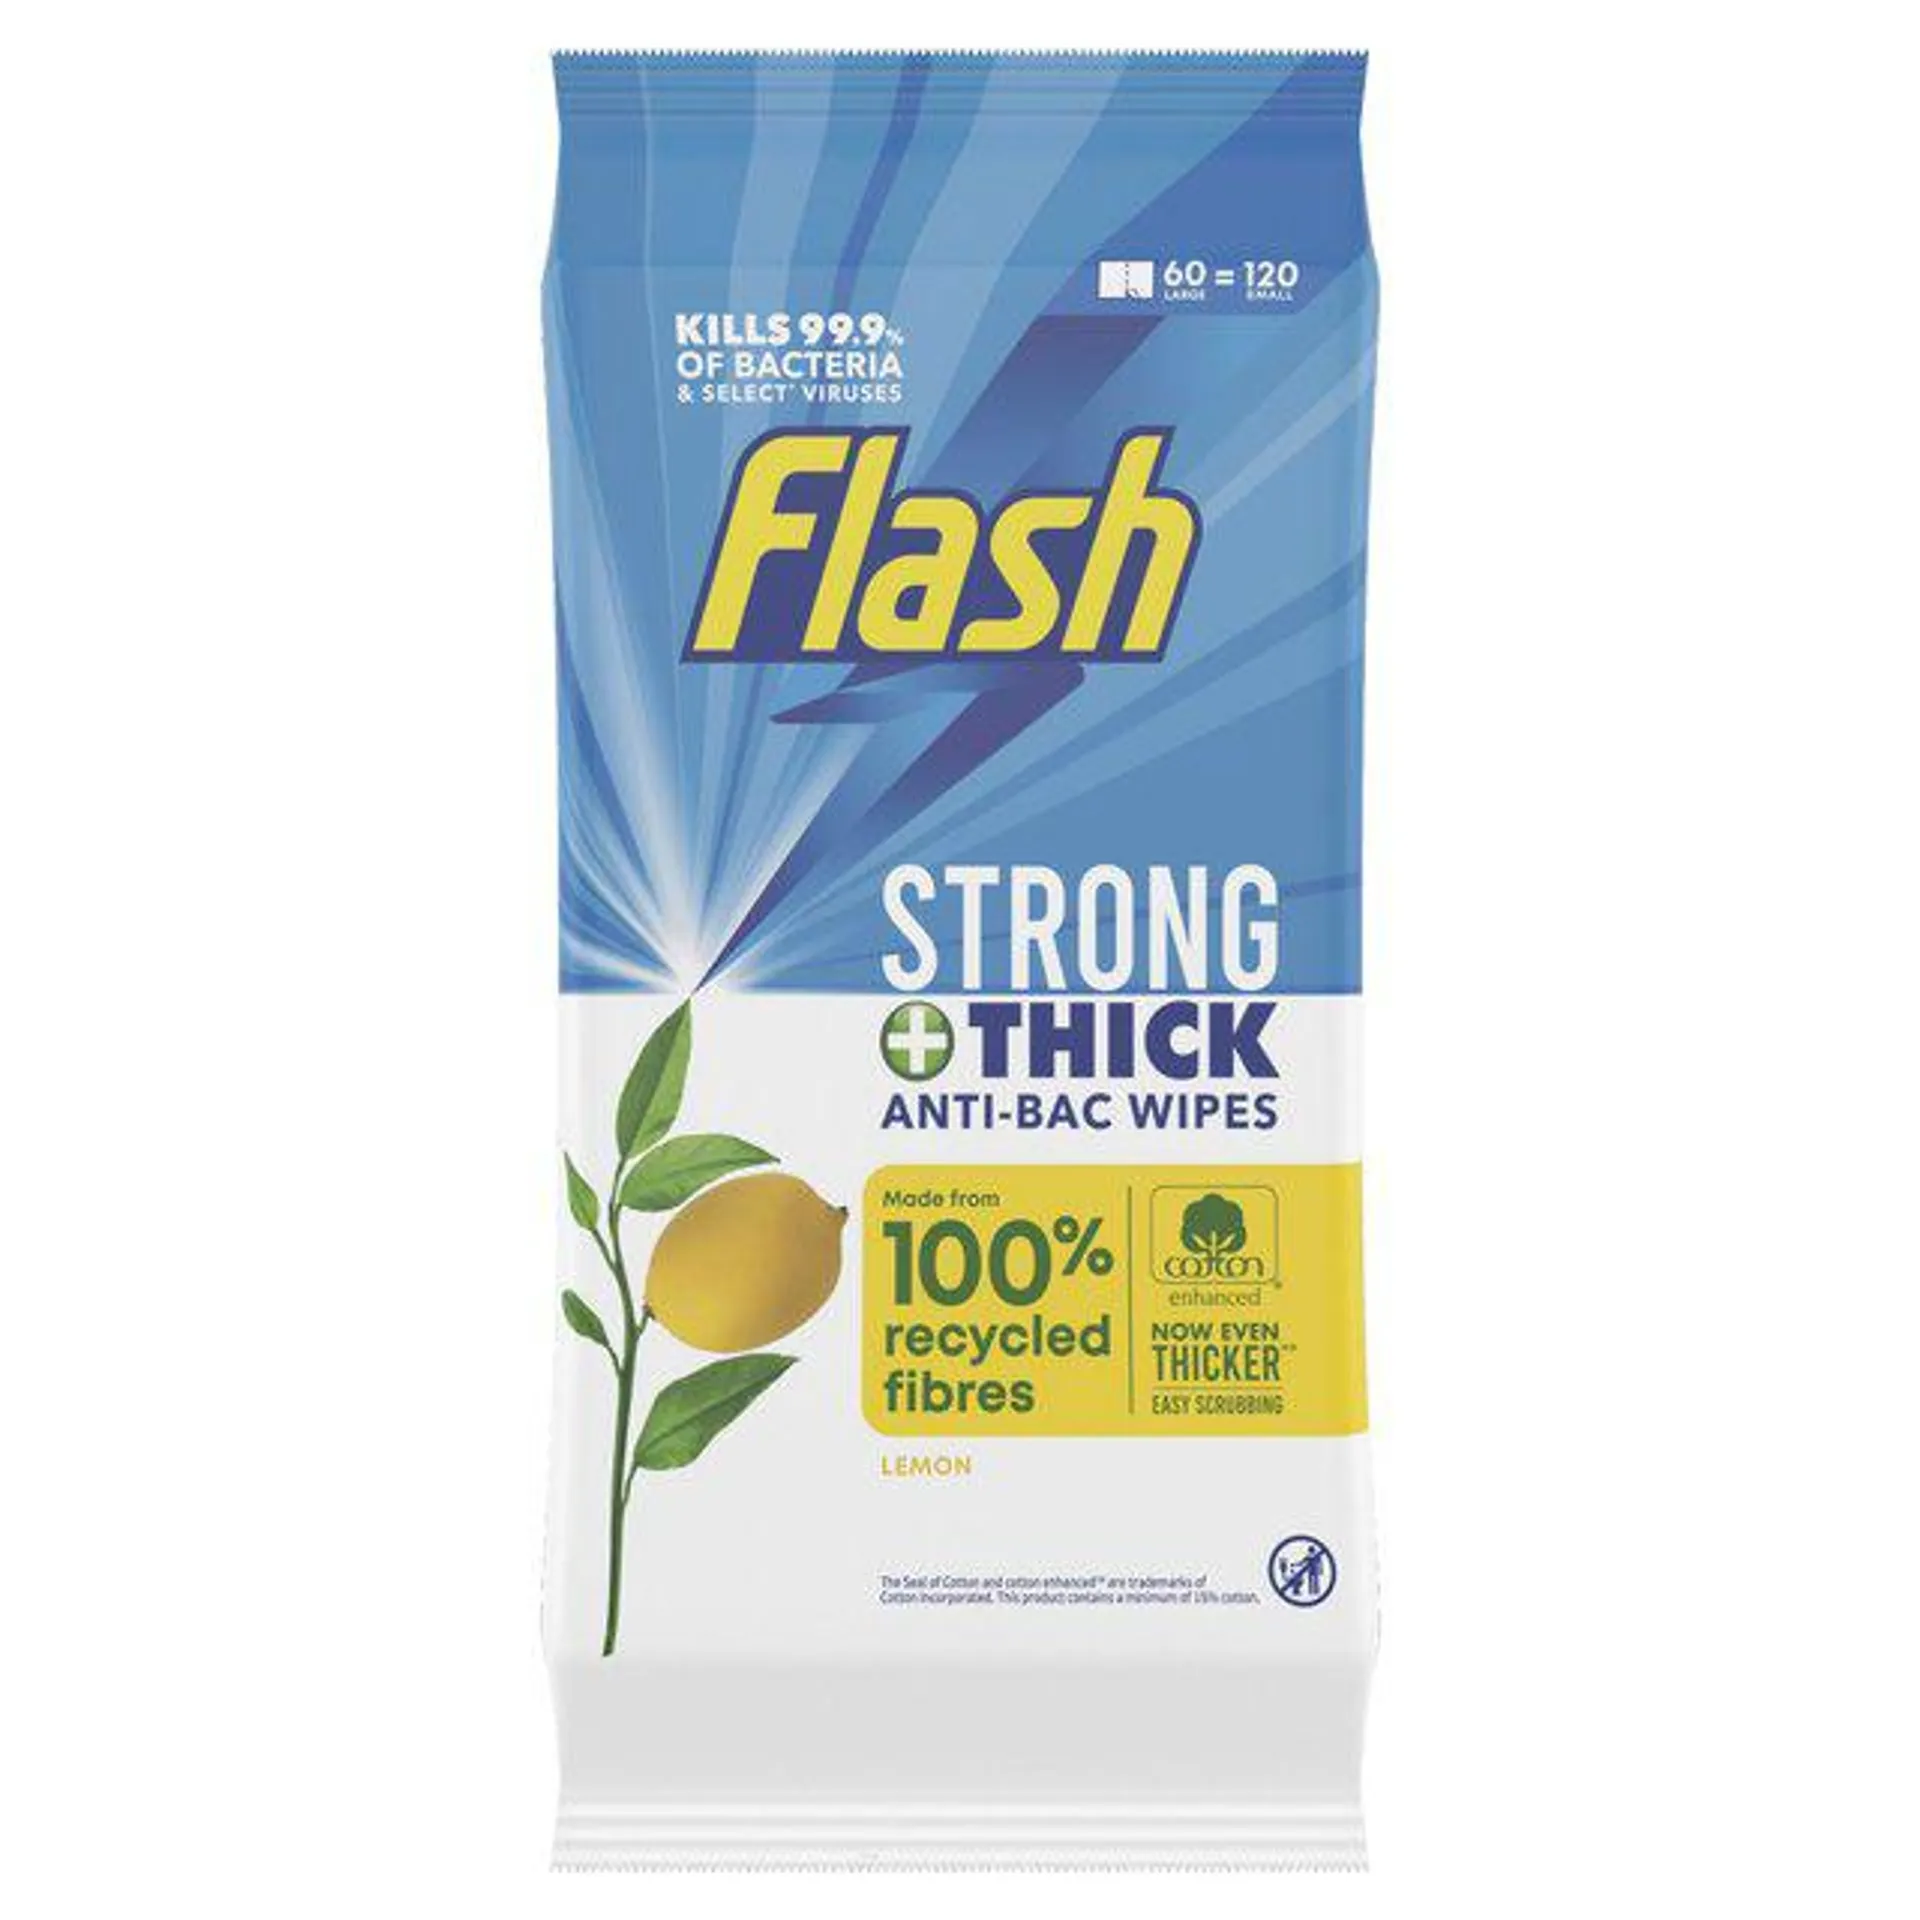 Flash Anti-Bacterial All Purpose Wipes 120 per pack